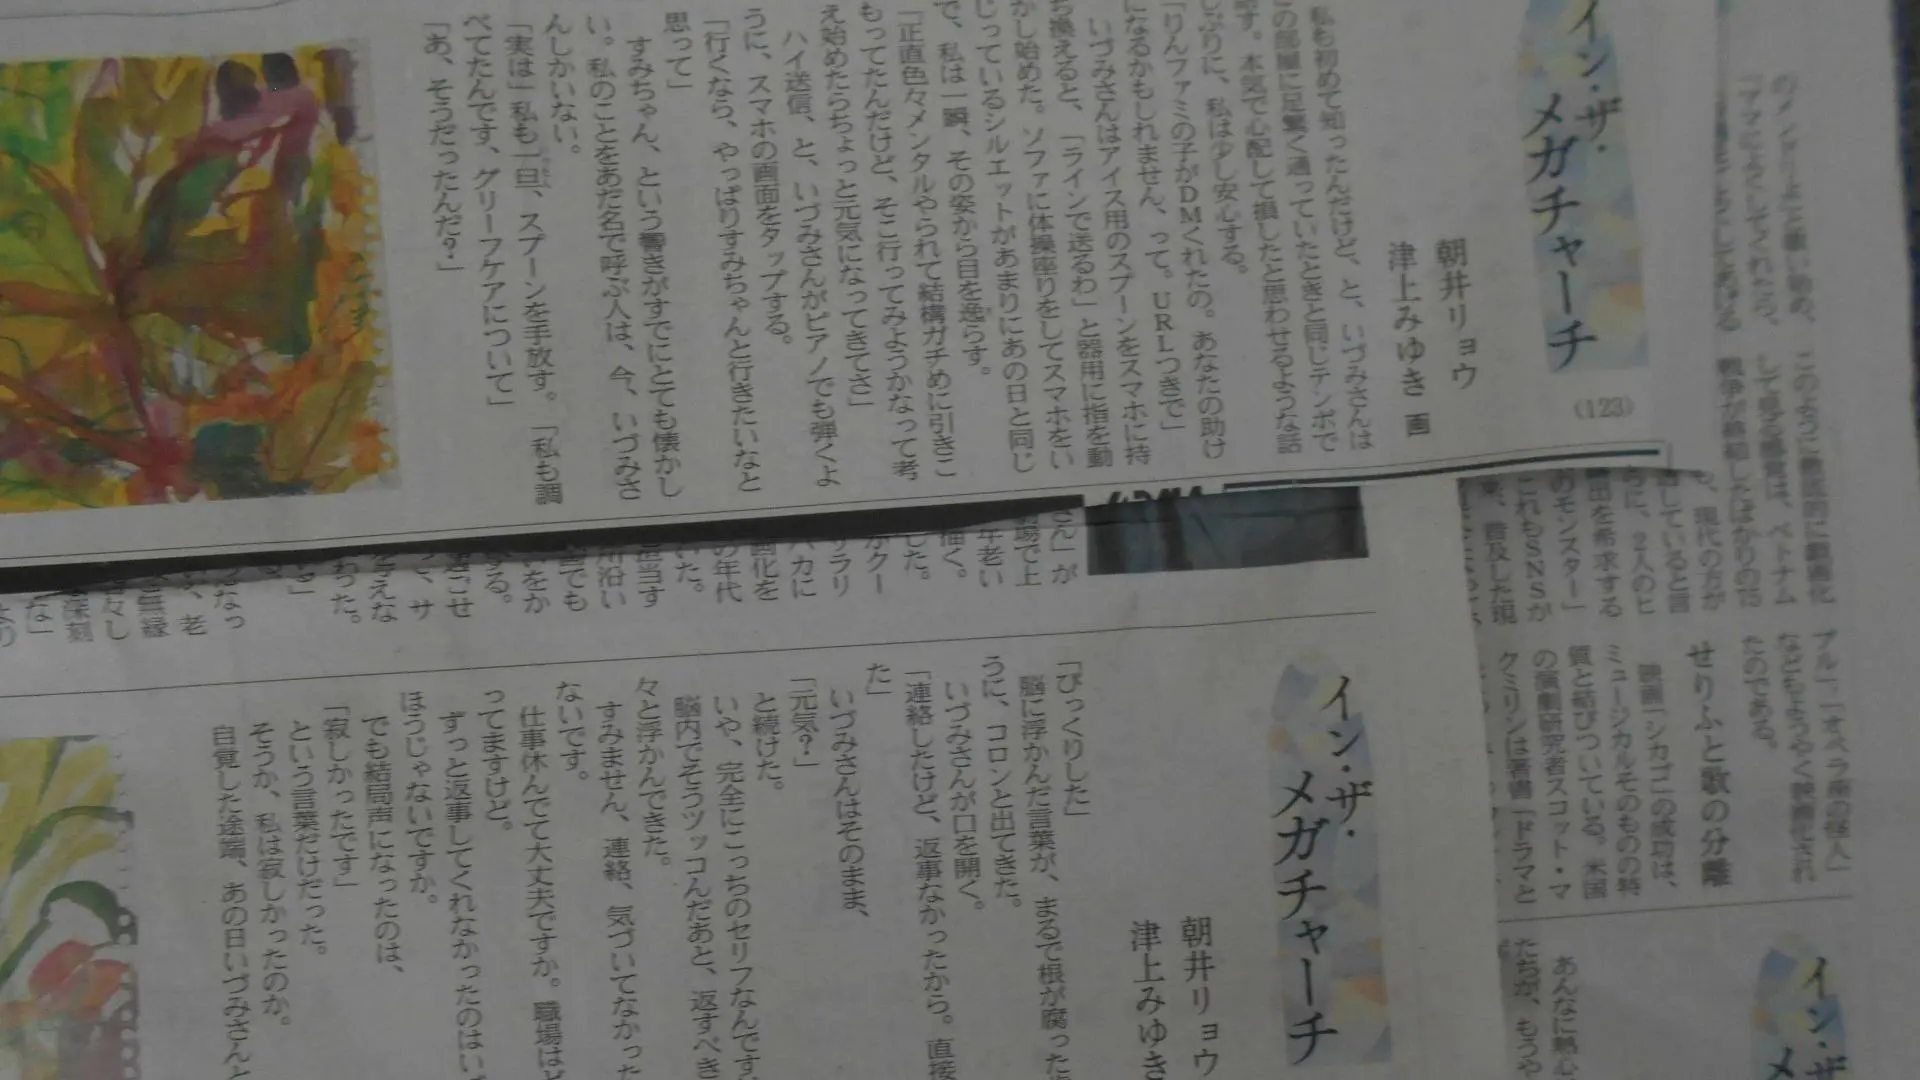 三浦春馬さんの事件がモデルでは？」と言われて日本経済新聞の連載小説 